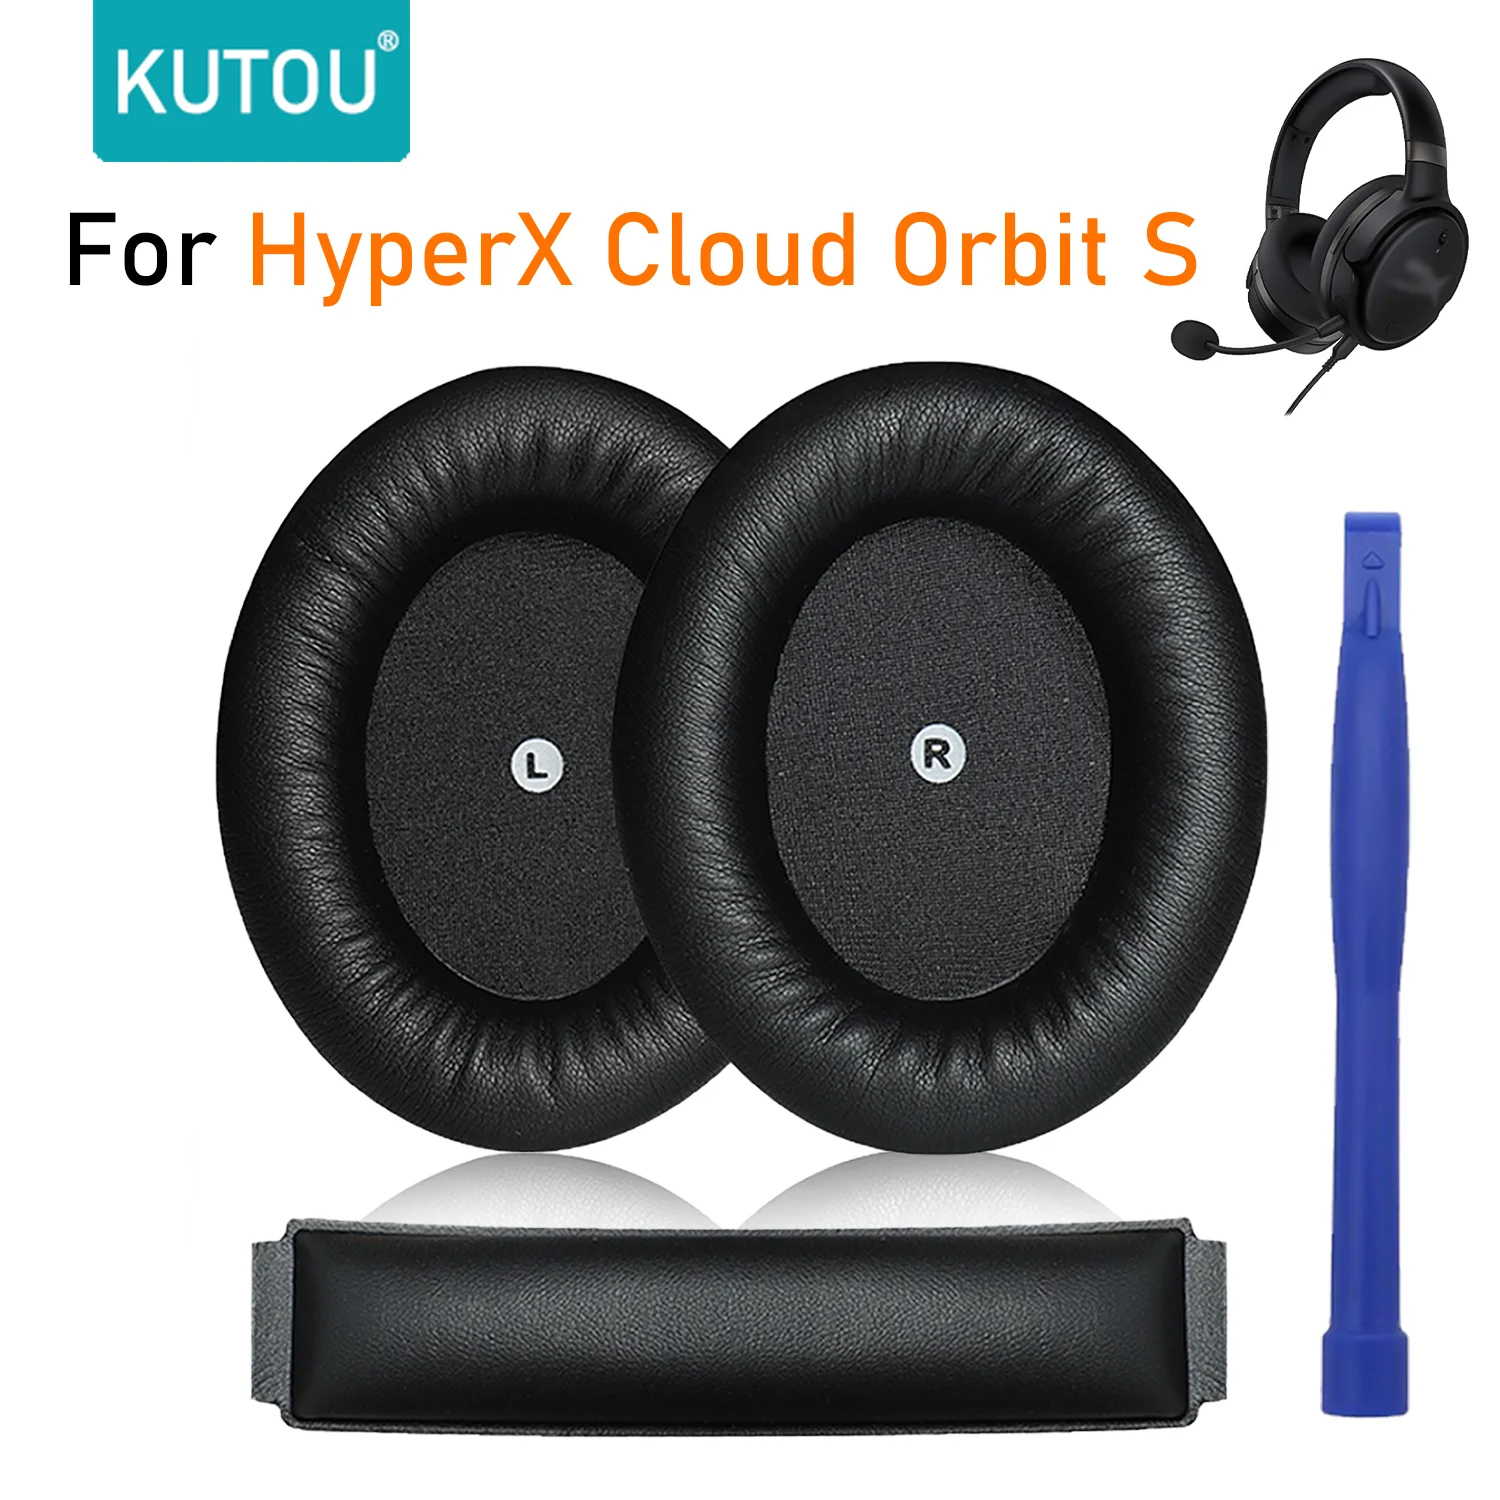 

KUTOU Replacement Earpads For Kingston HyperX Cloud Orbit S Headphone Soft Ear Pads Earpad Foam Cushion Wear Comfortable